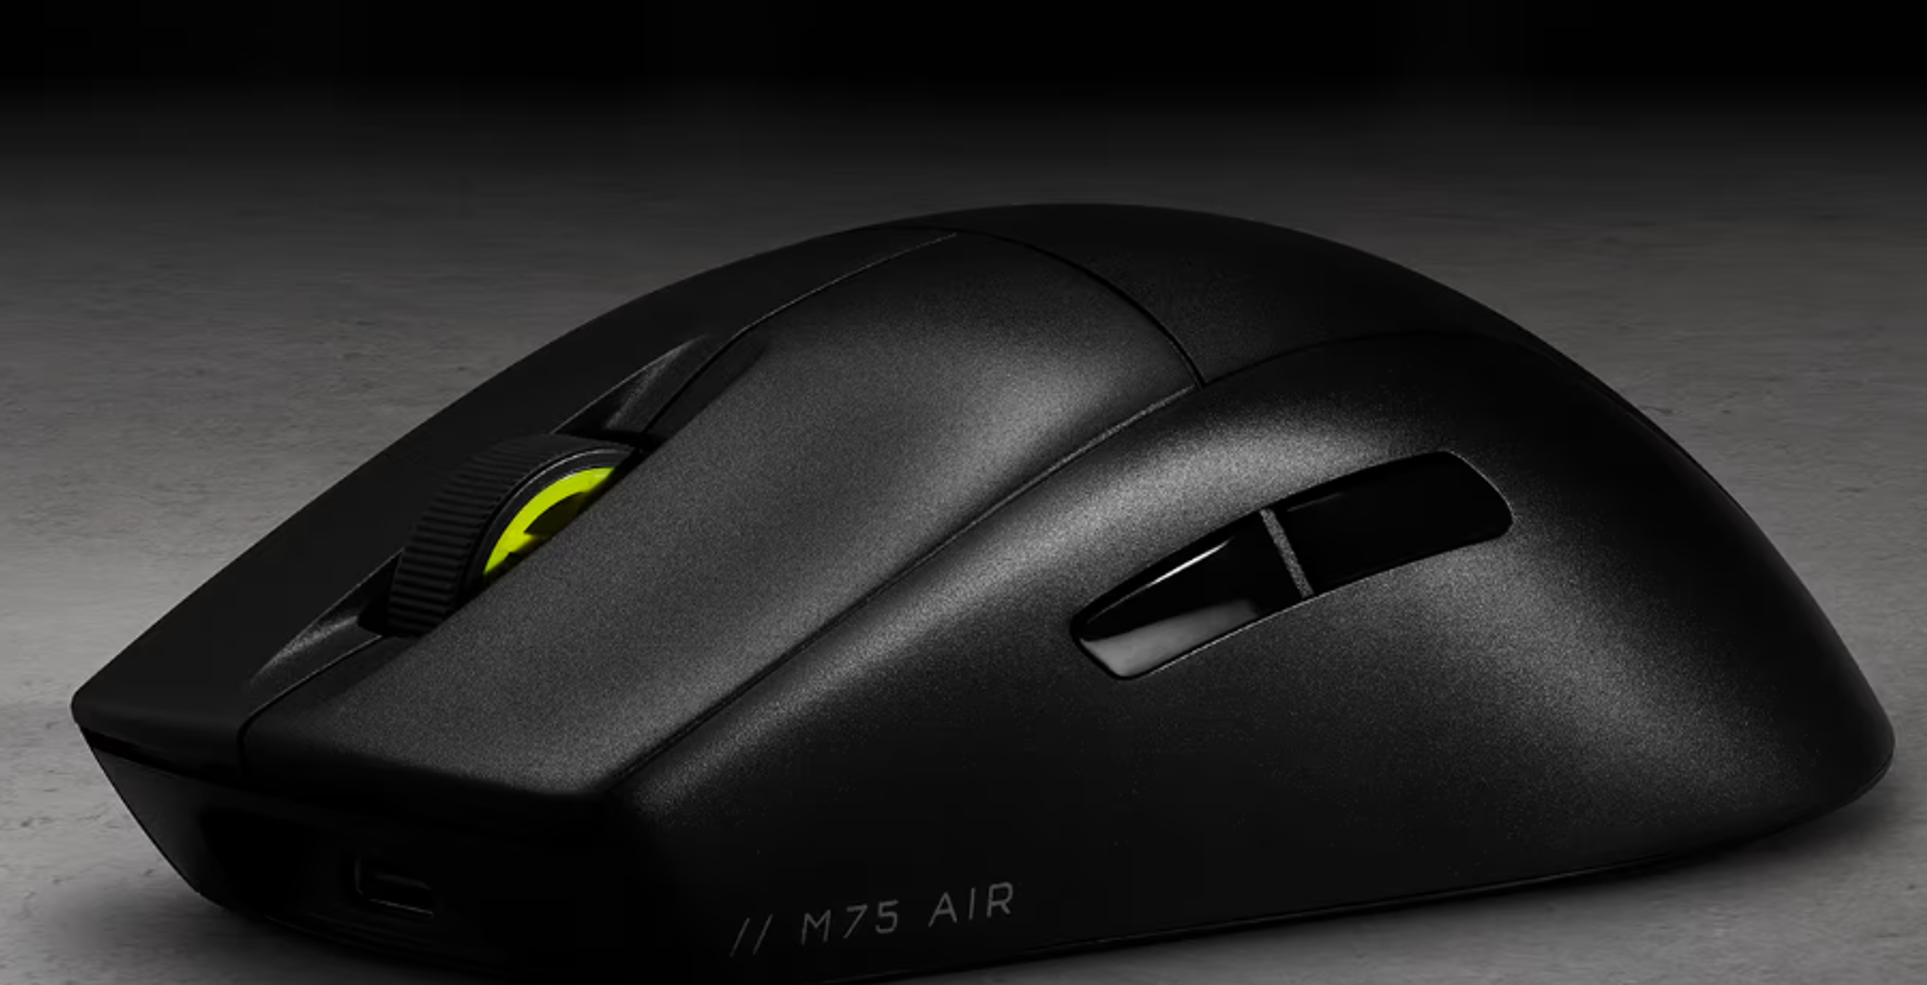 Corsair M75 AIR, la souris ultra légère parfaite pour le gaming ? Notre test !